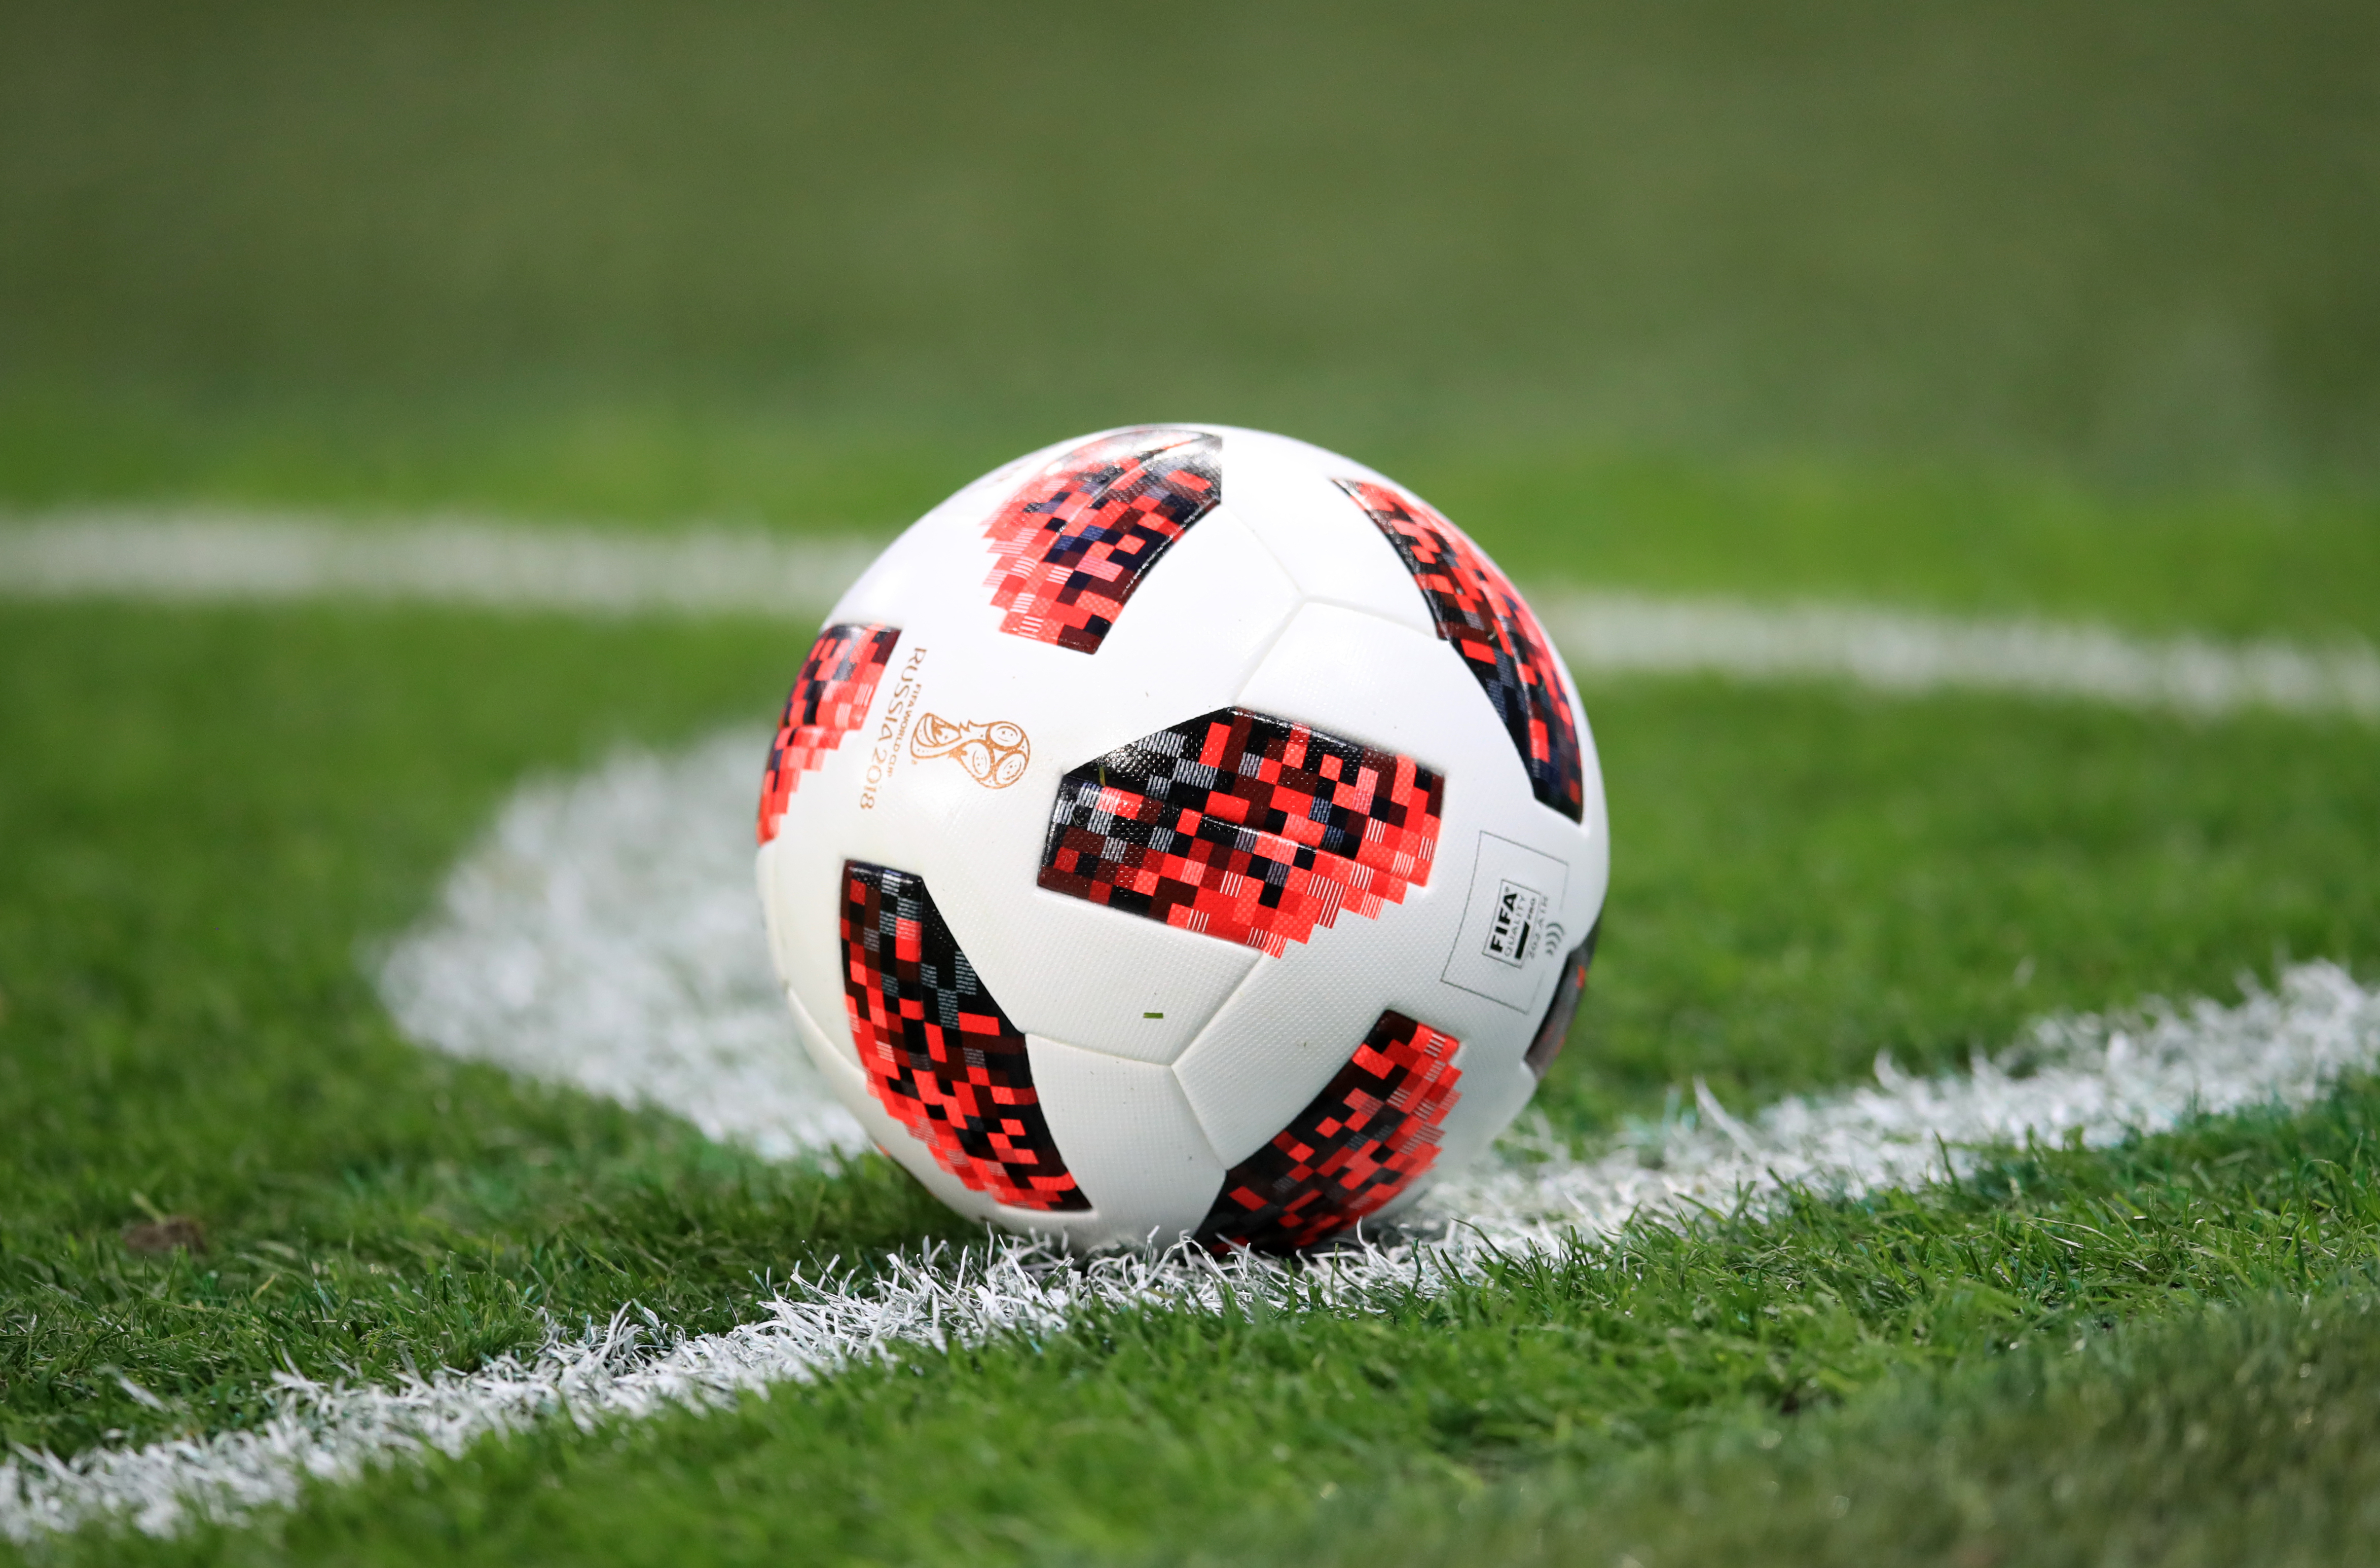 A general view of an Adidas Telstar match ball